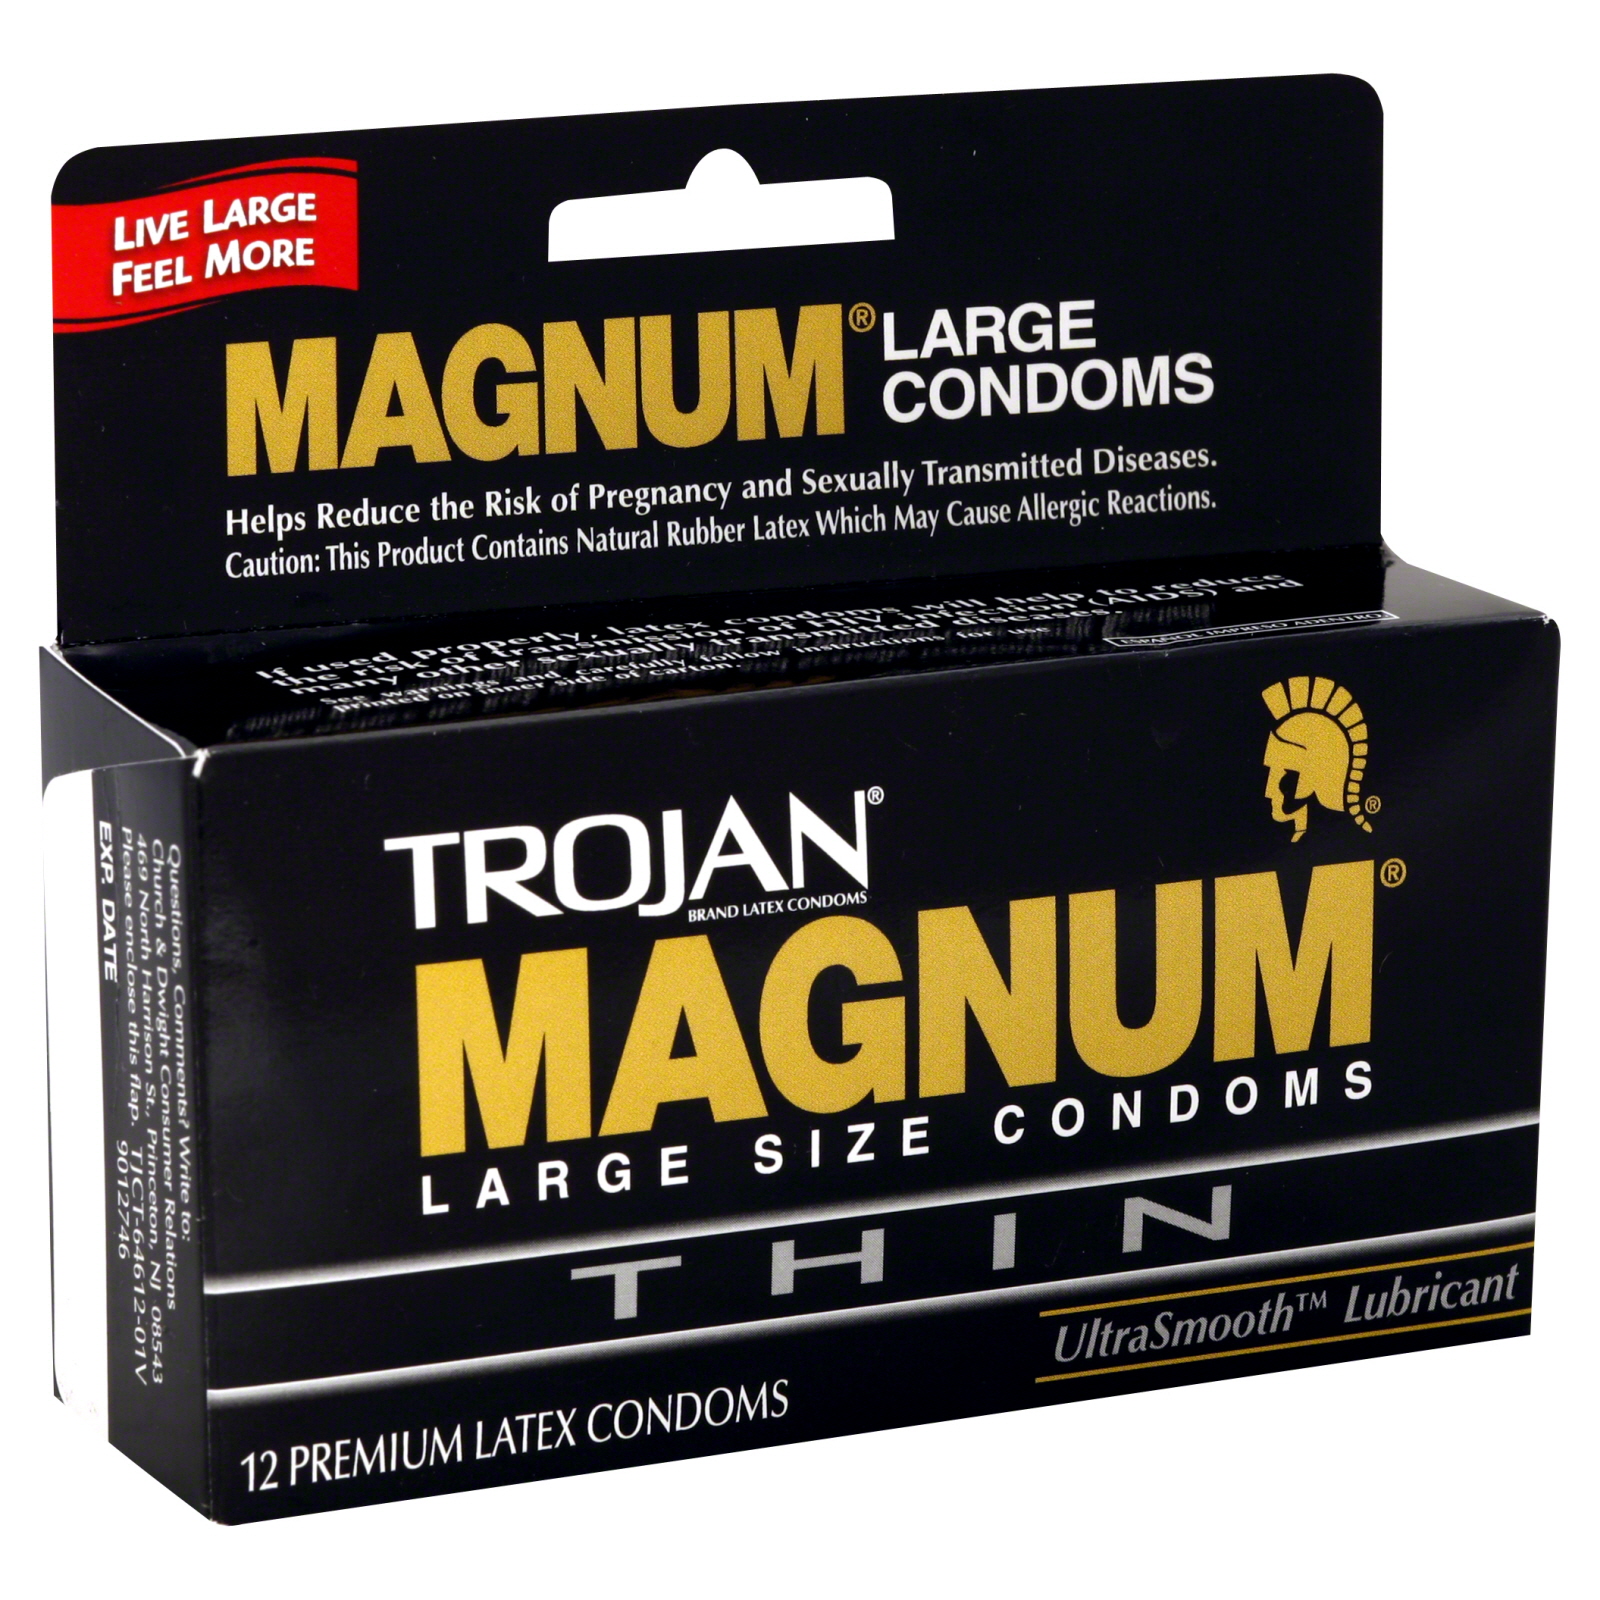 Trojan Magnum Thin Premium Latex Condoms, UltraSmooth Lubricant, Large Size, 12 condoms